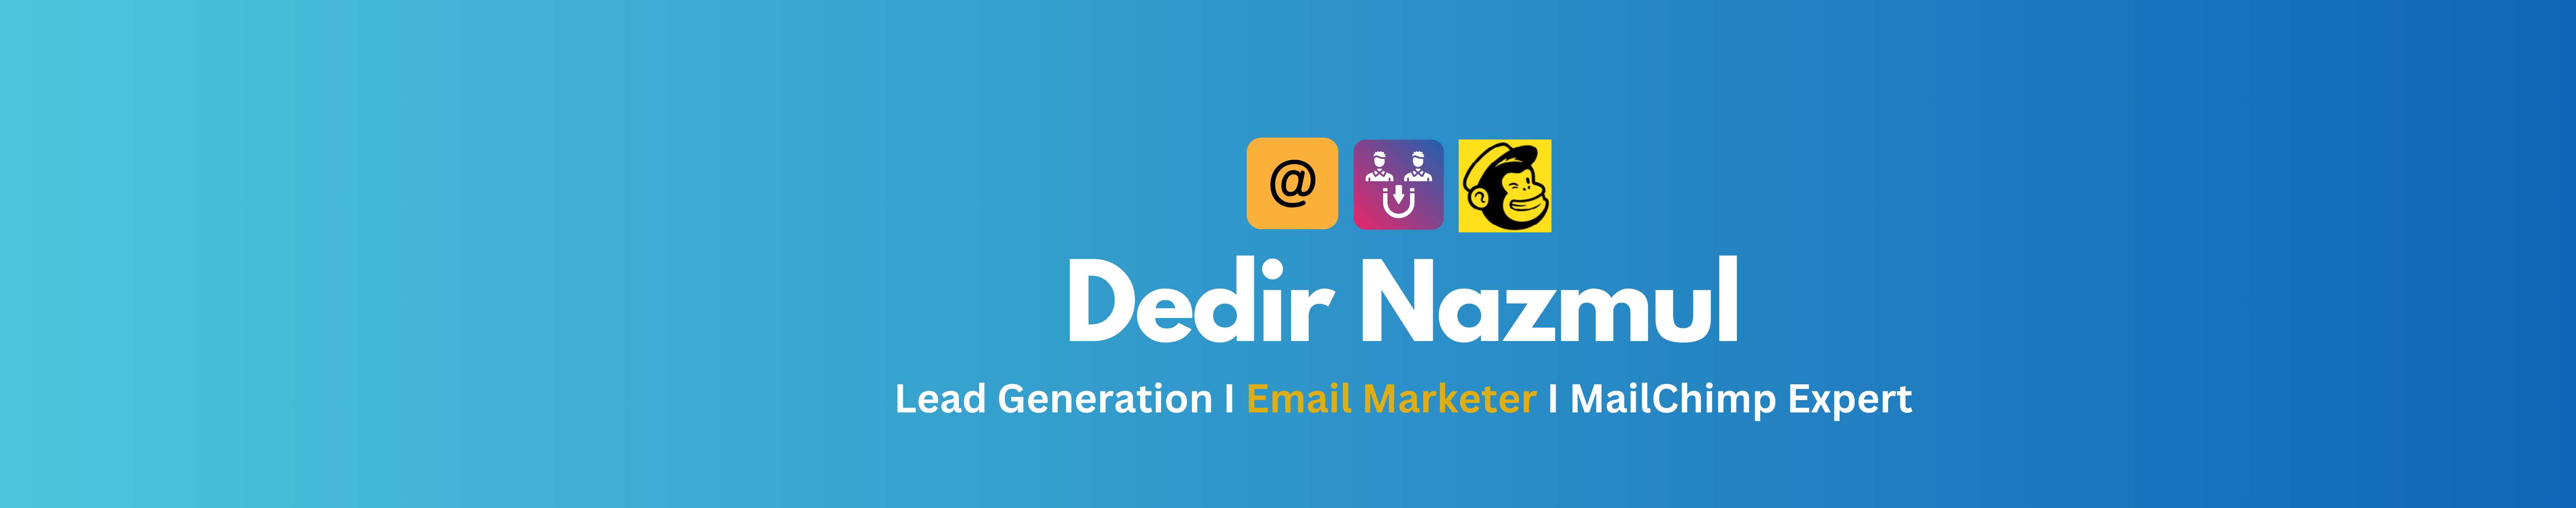 Dedir Nazmul's profile banner